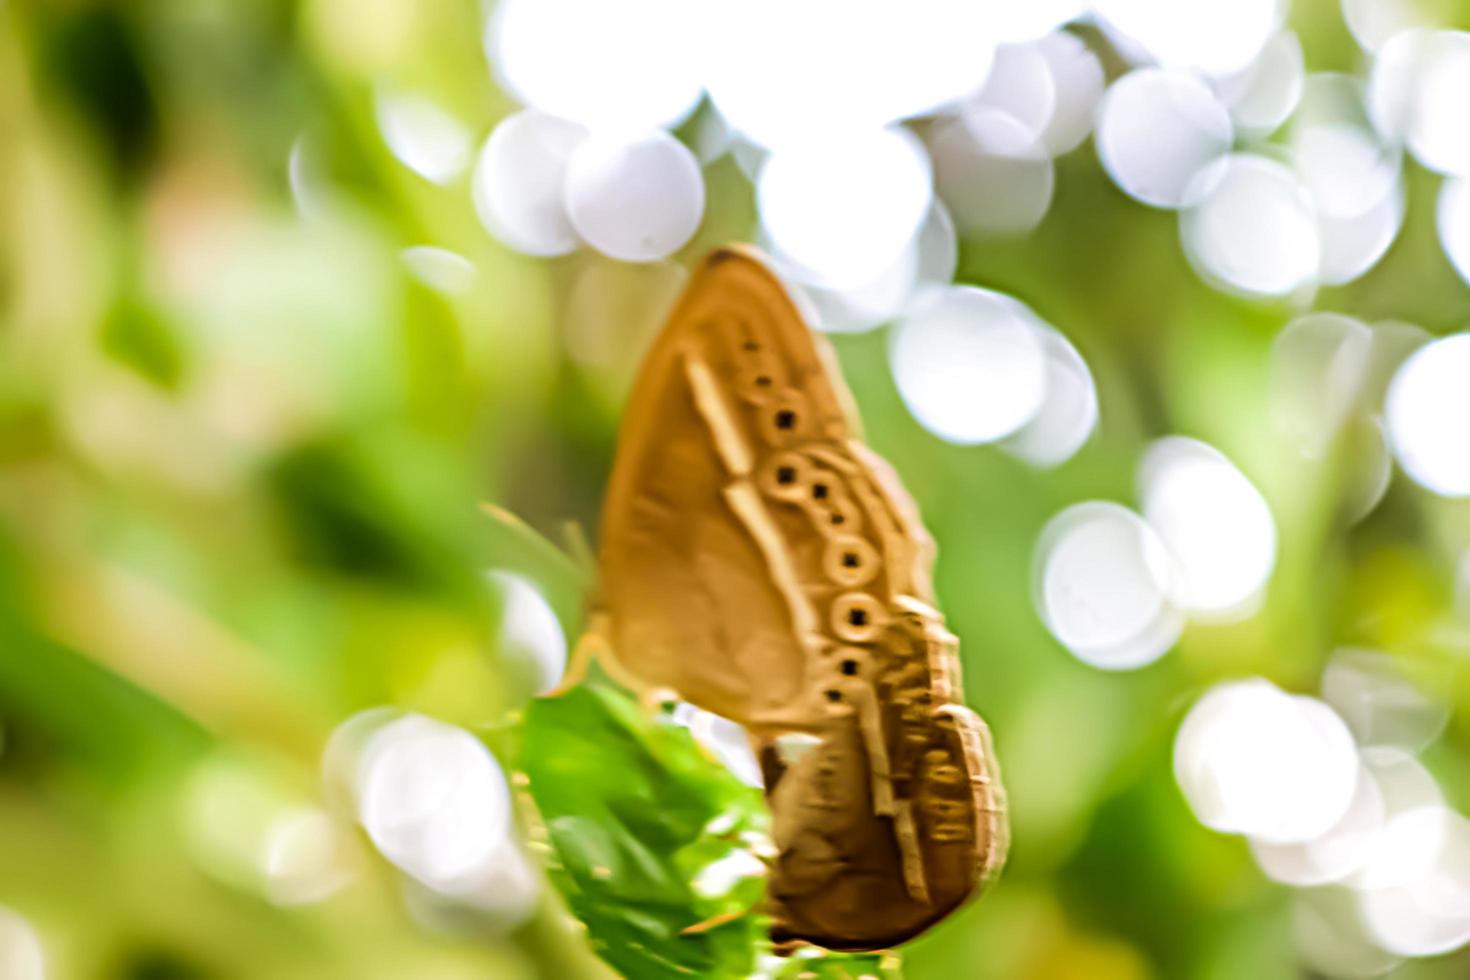 schöner geflügelter insektentierschmetterling mit unschärfehintergrundbeschaffenheit foto